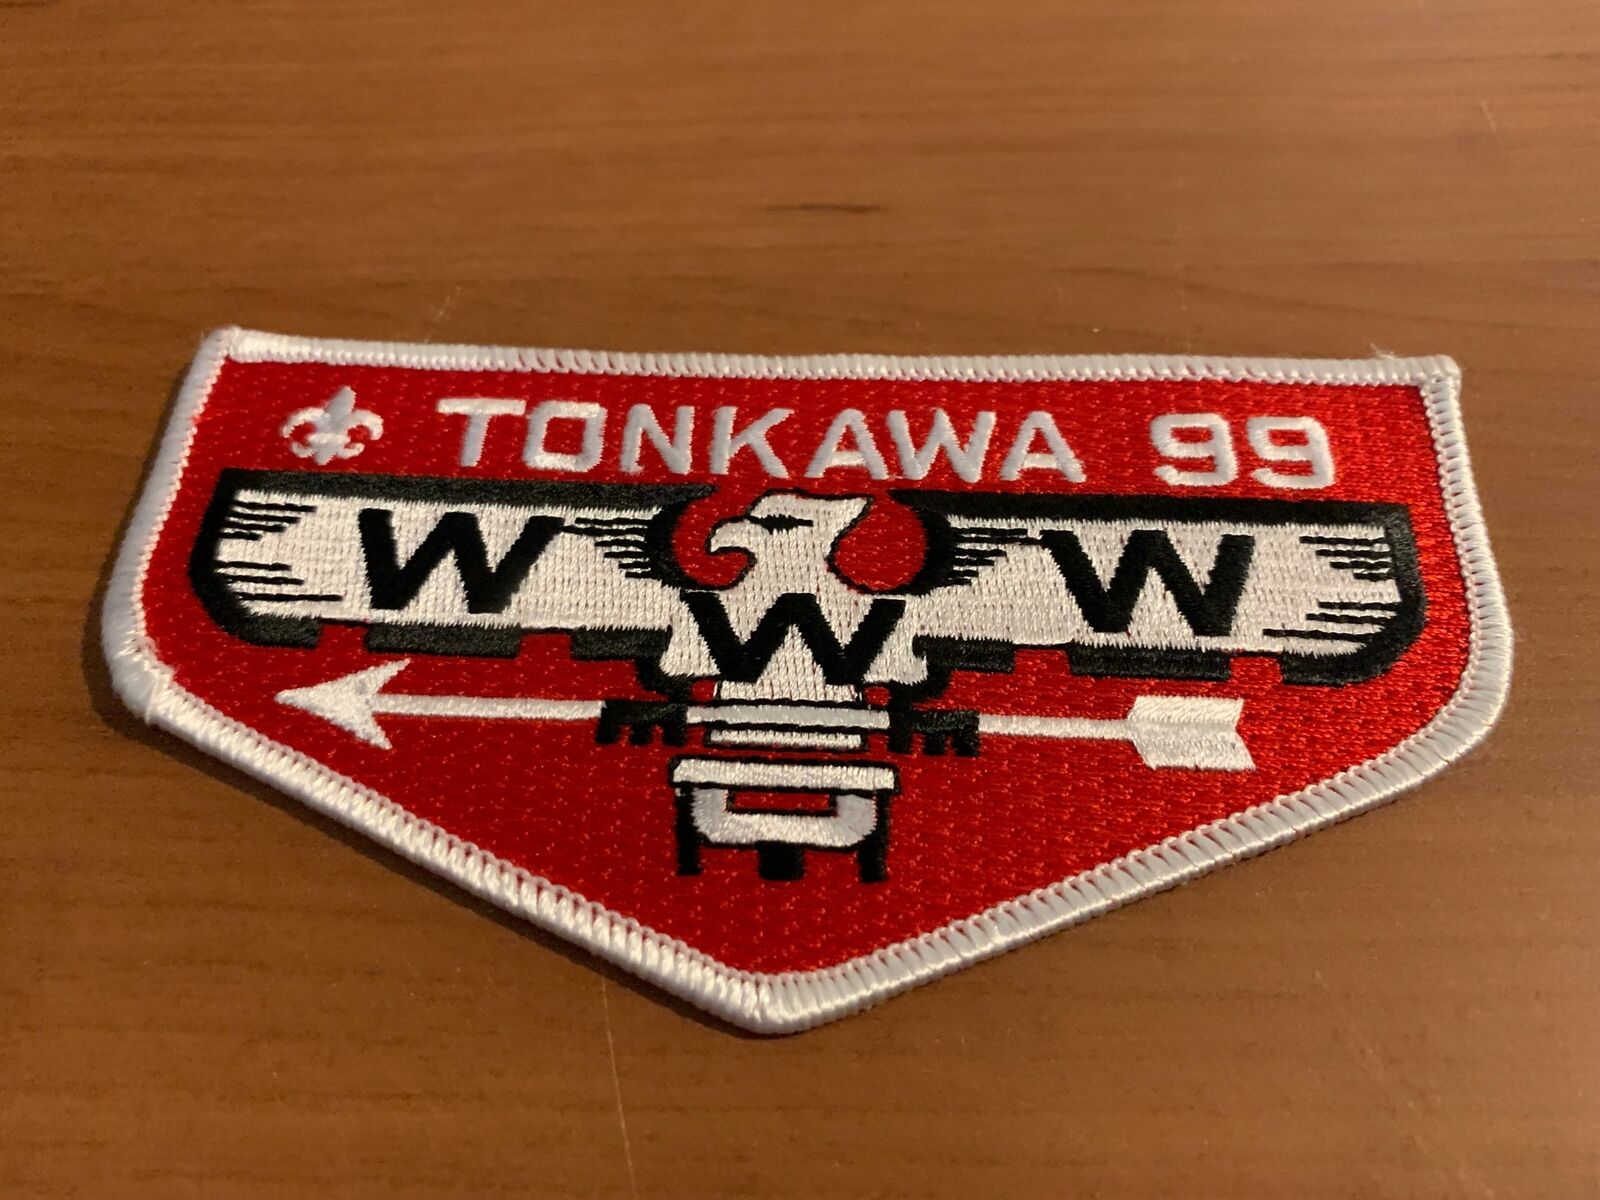 OA, Tonkawa (99) Ordeal Flap (S-31)